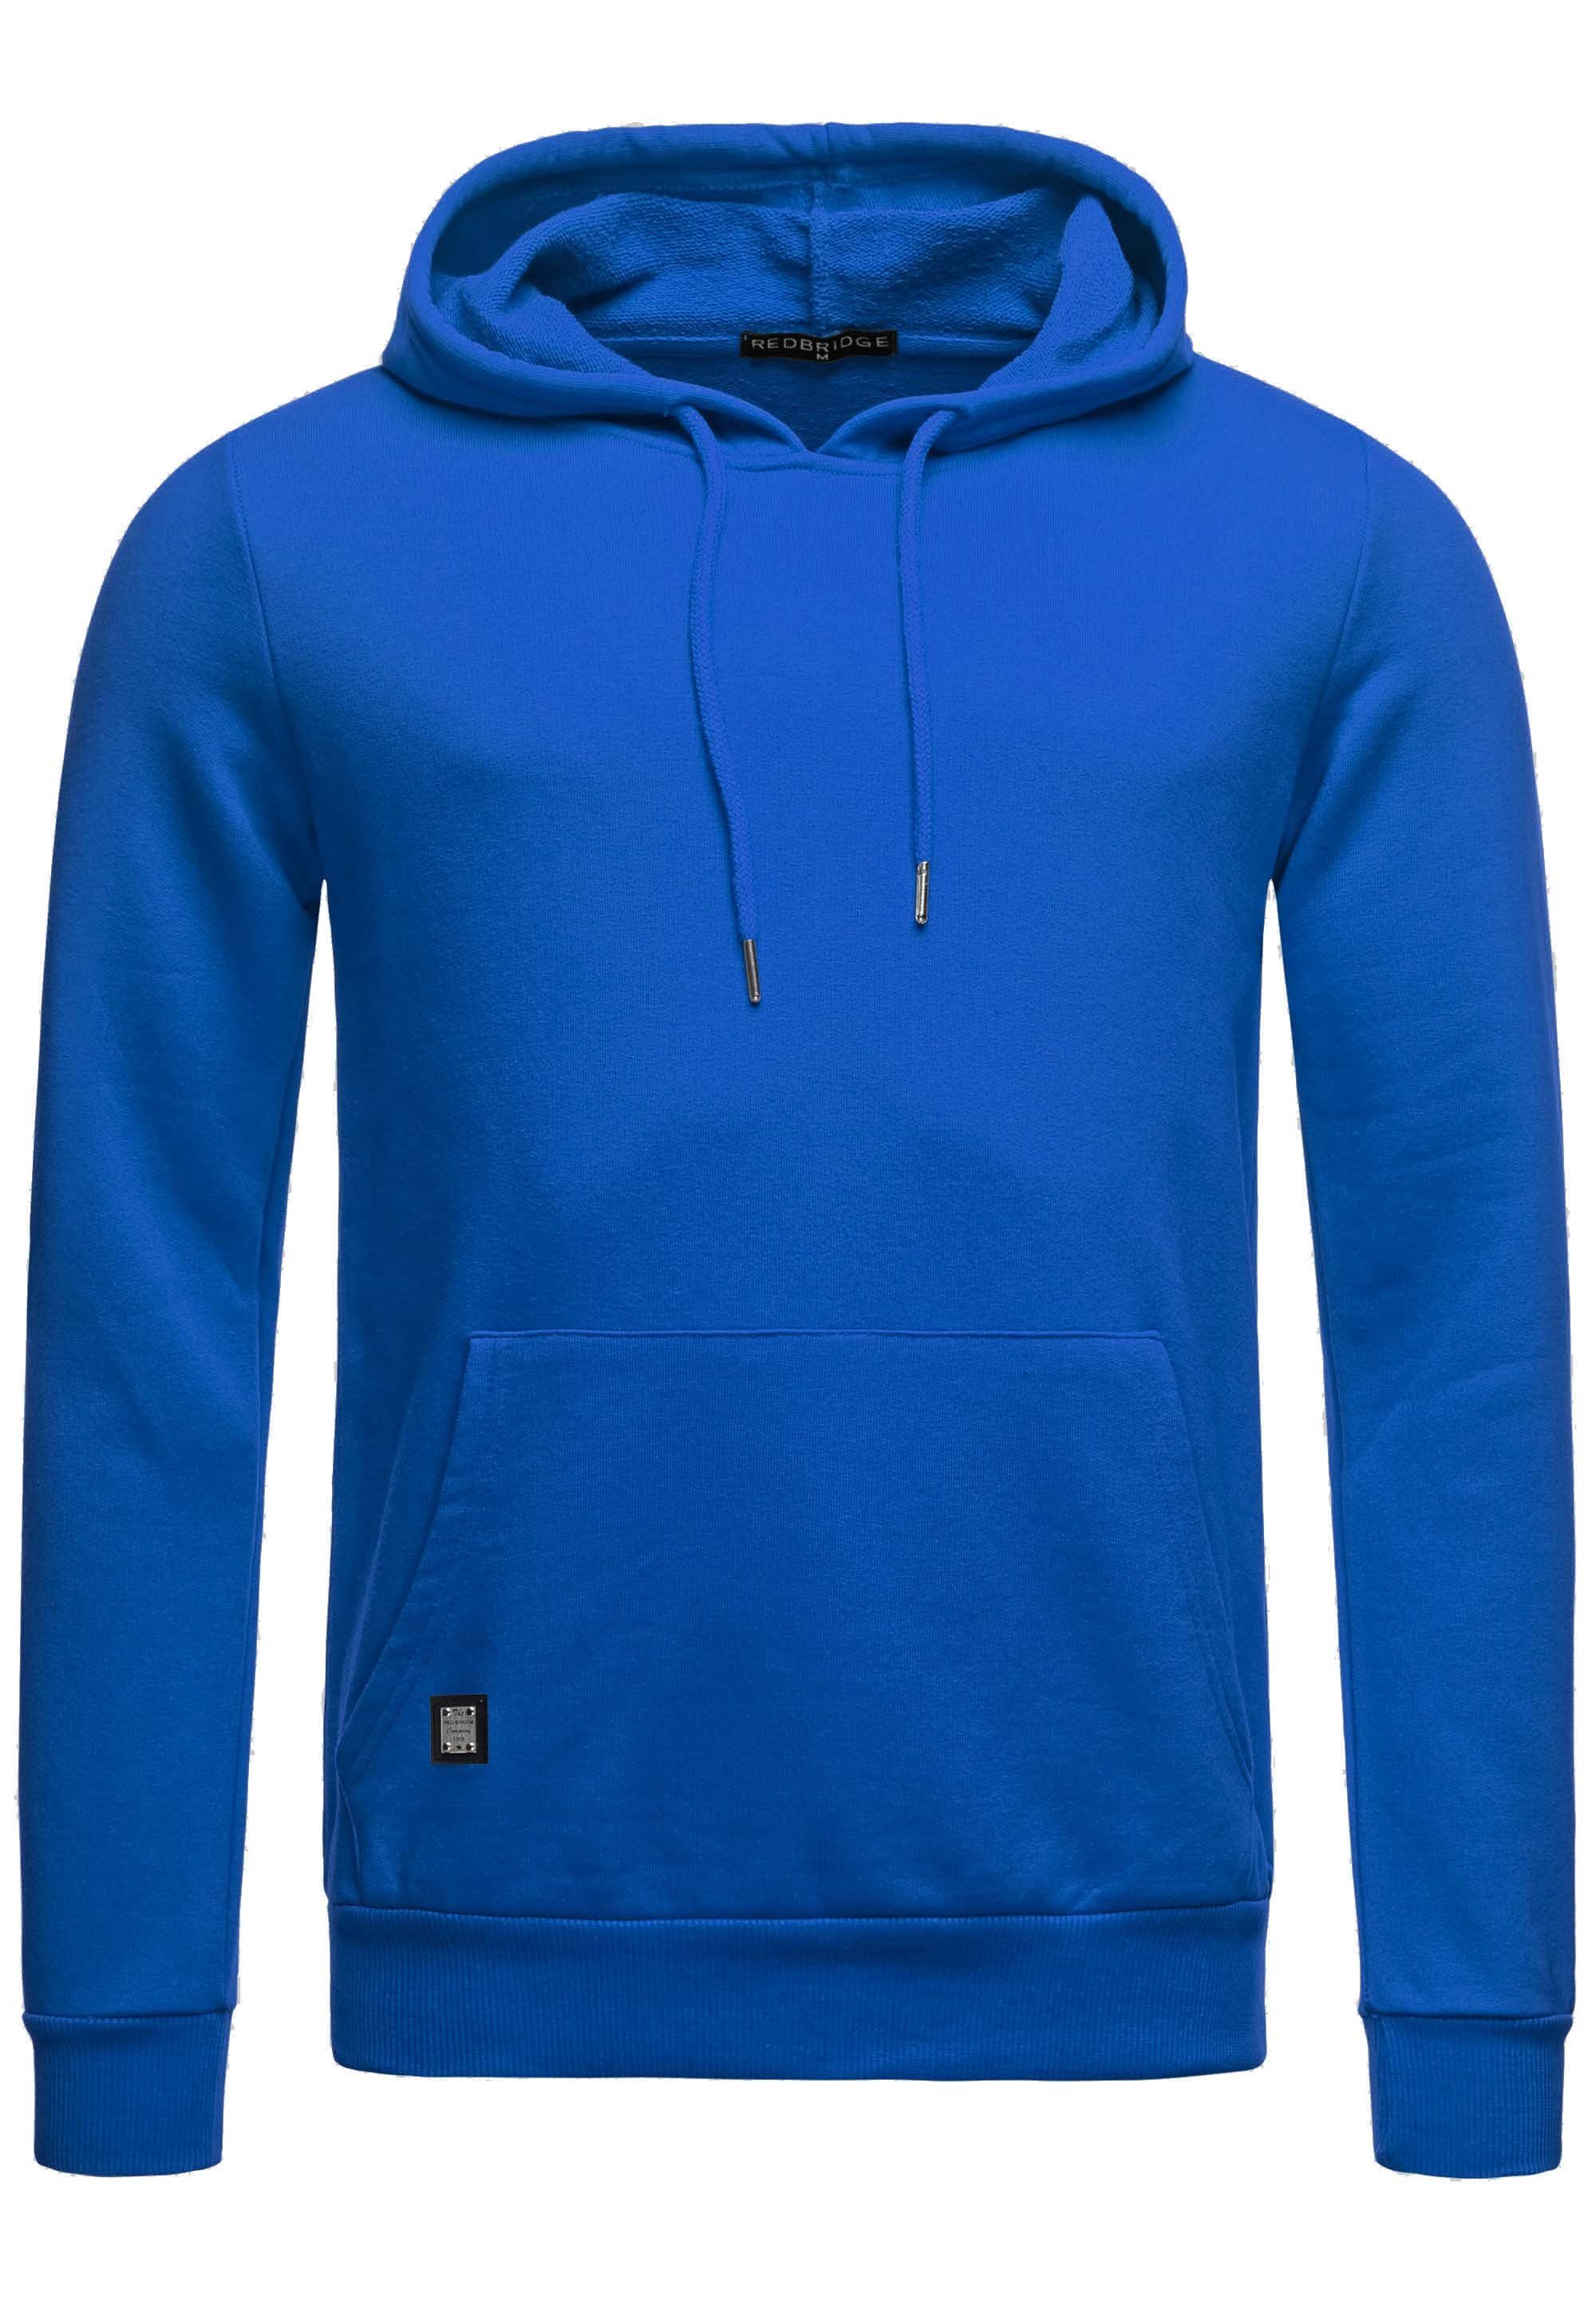 RedBridge Kapuzensweatshirt Hoodie mit Kängurutasche Premium Qualität Saxeblau